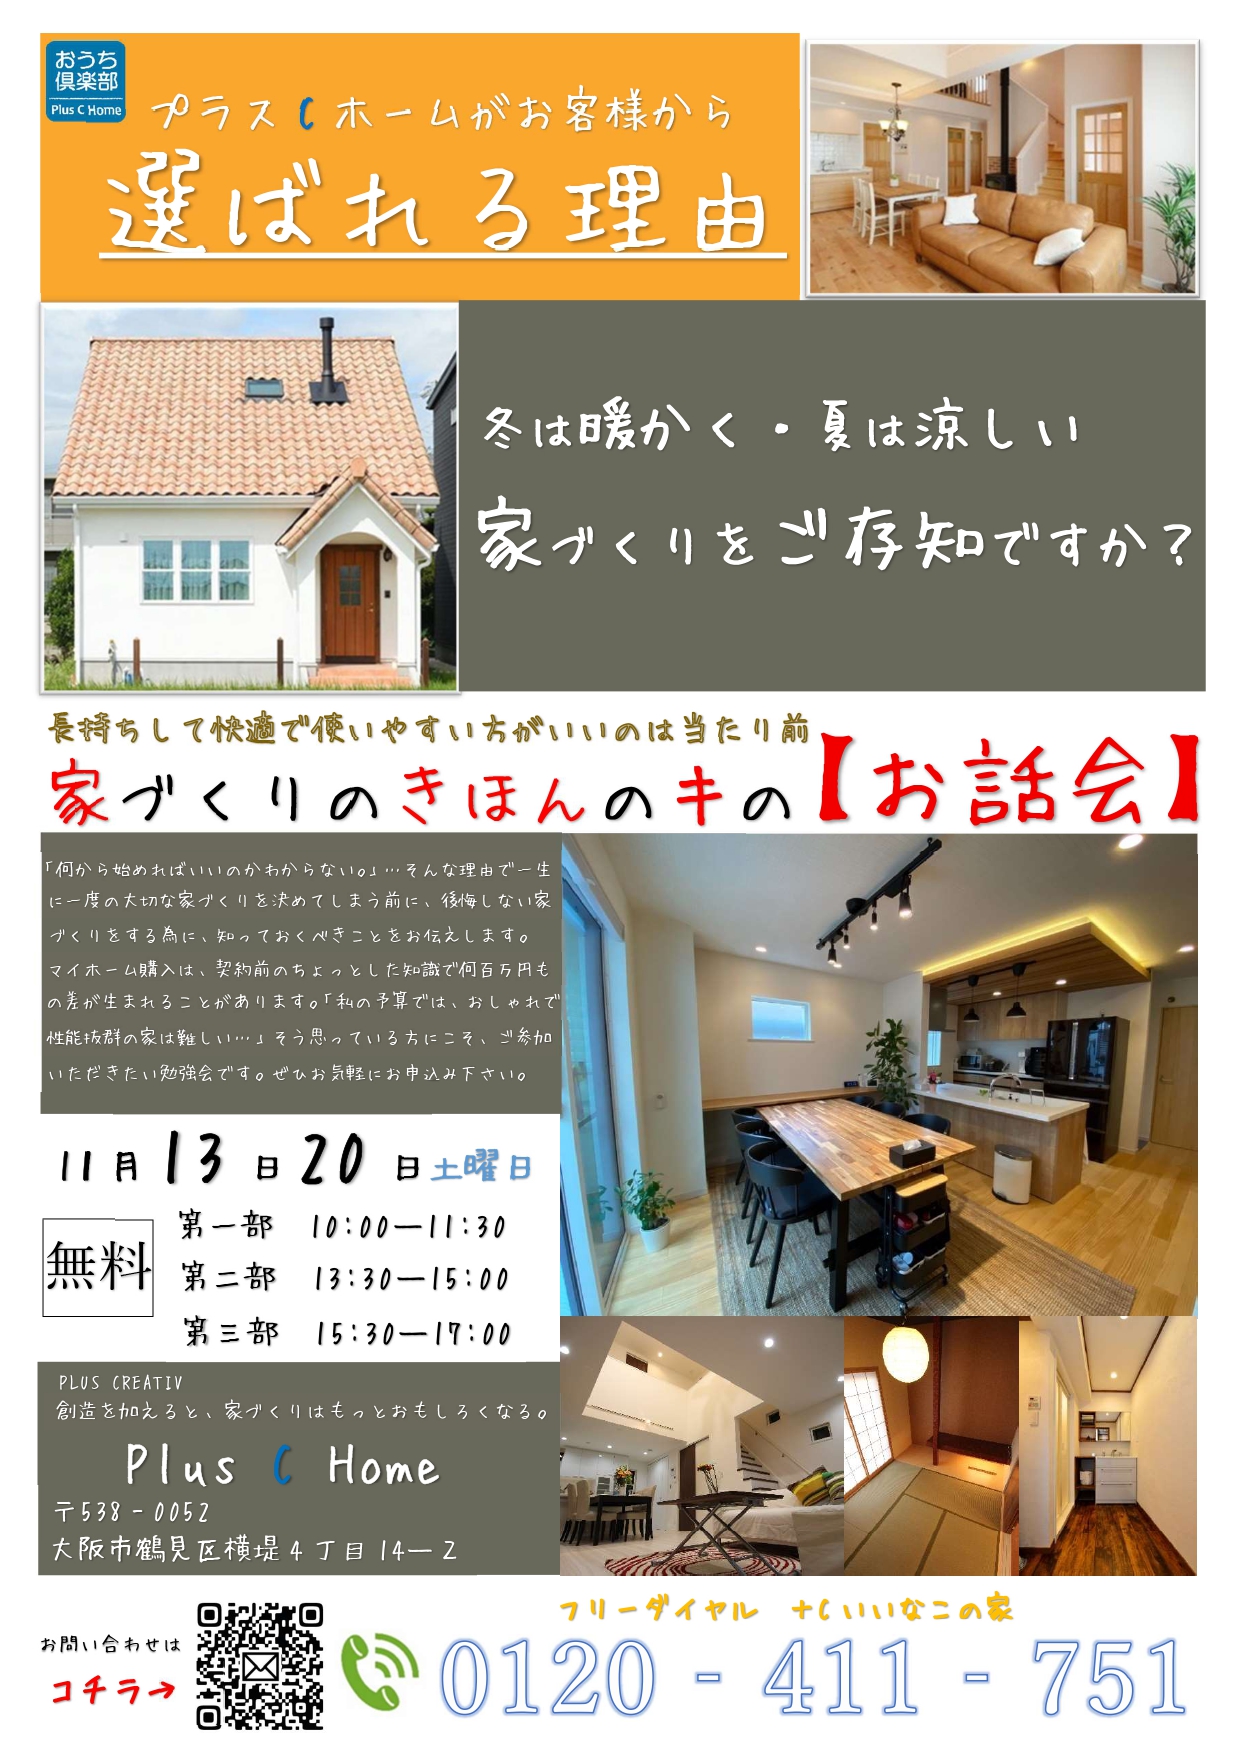 大阪市鶴見区で高断熱・高気密住宅を建てております工務店Plus C Homeのお話会です♪